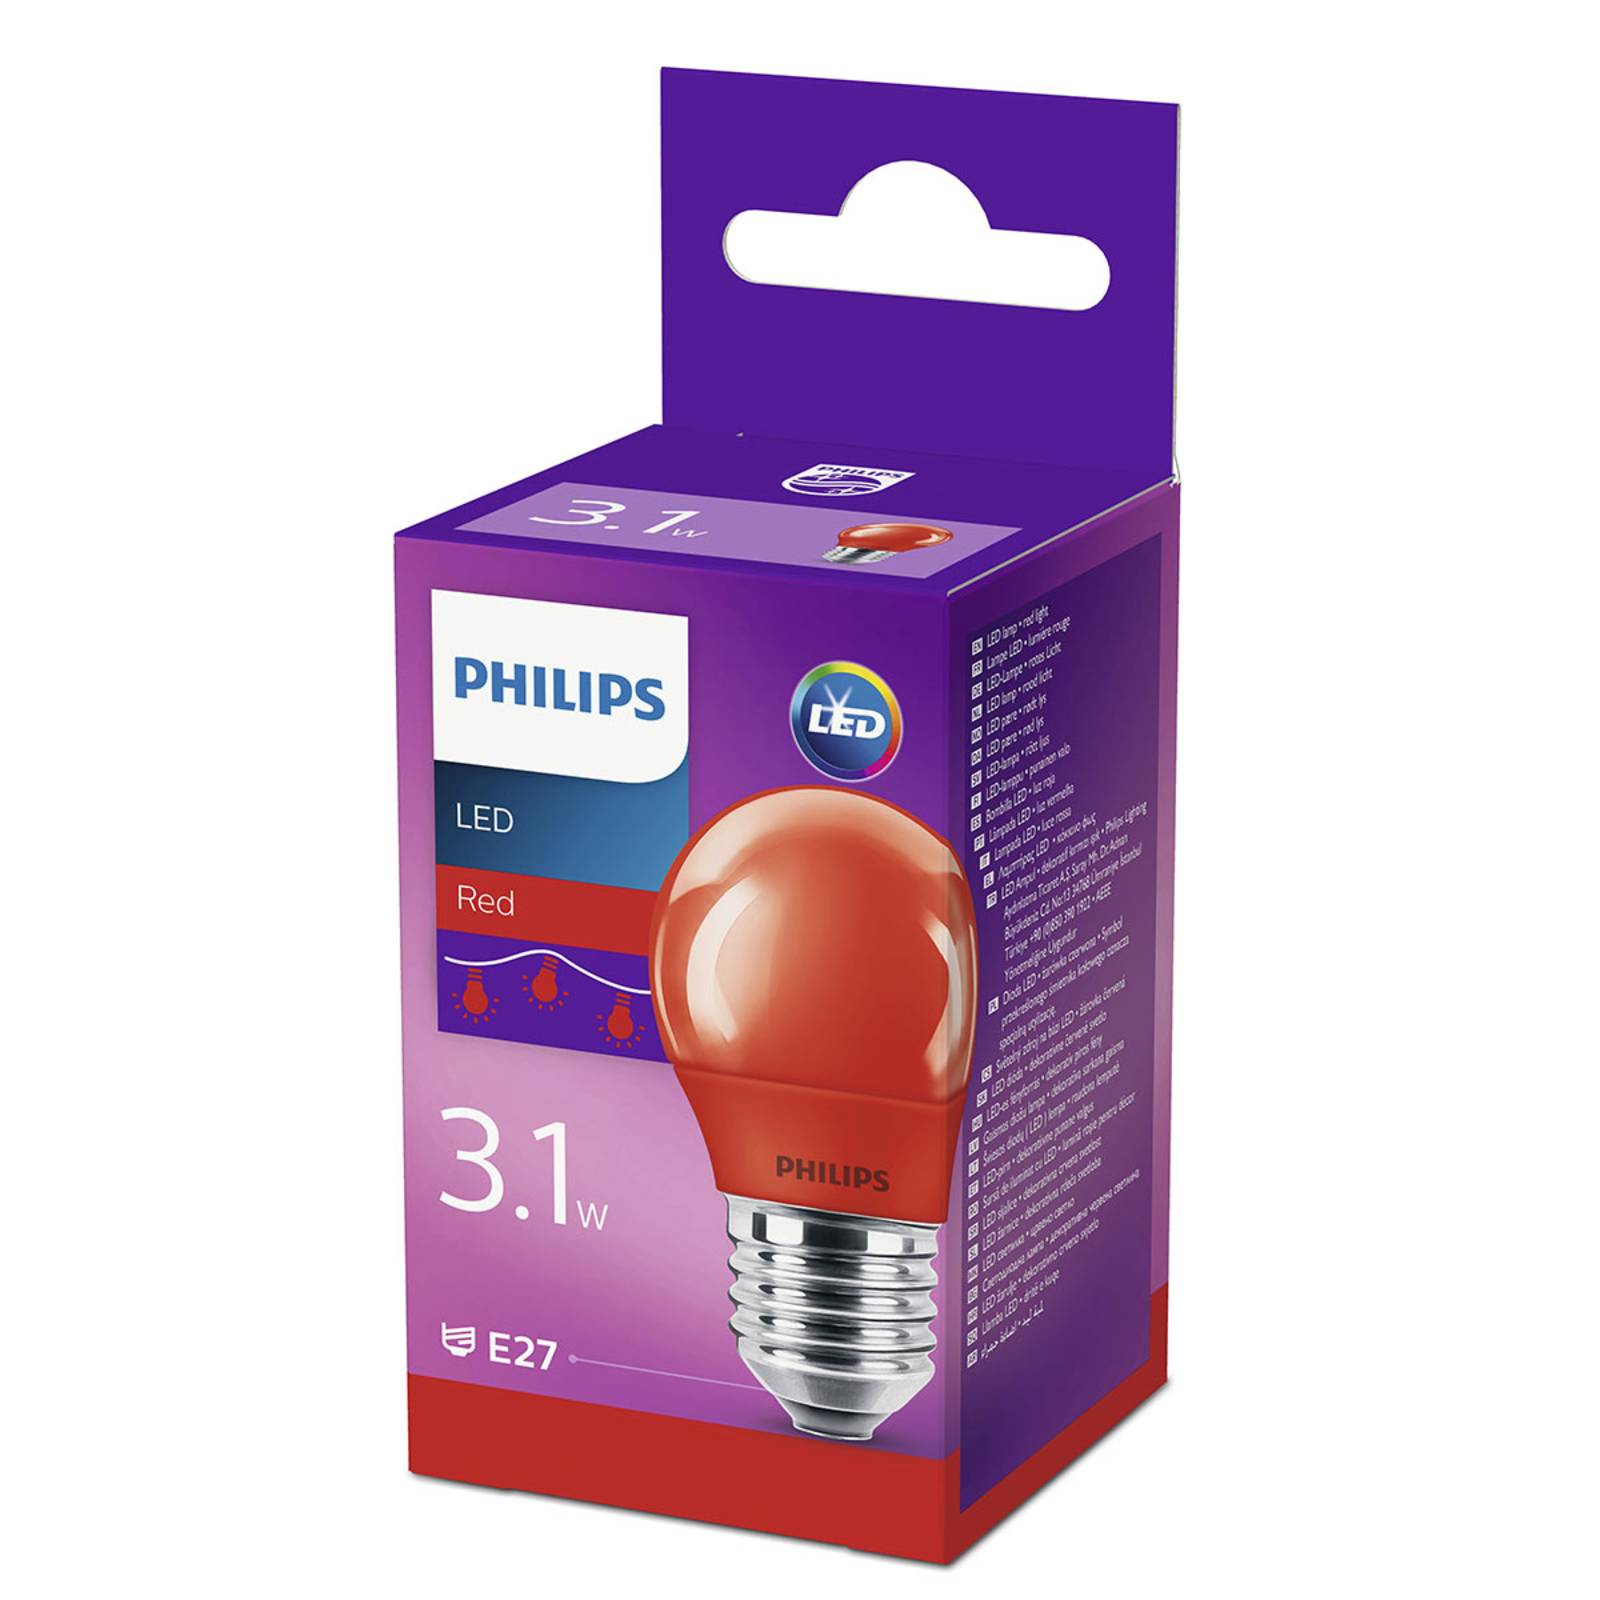 Philips LED žárovka E27 P45 3,1 W, červená